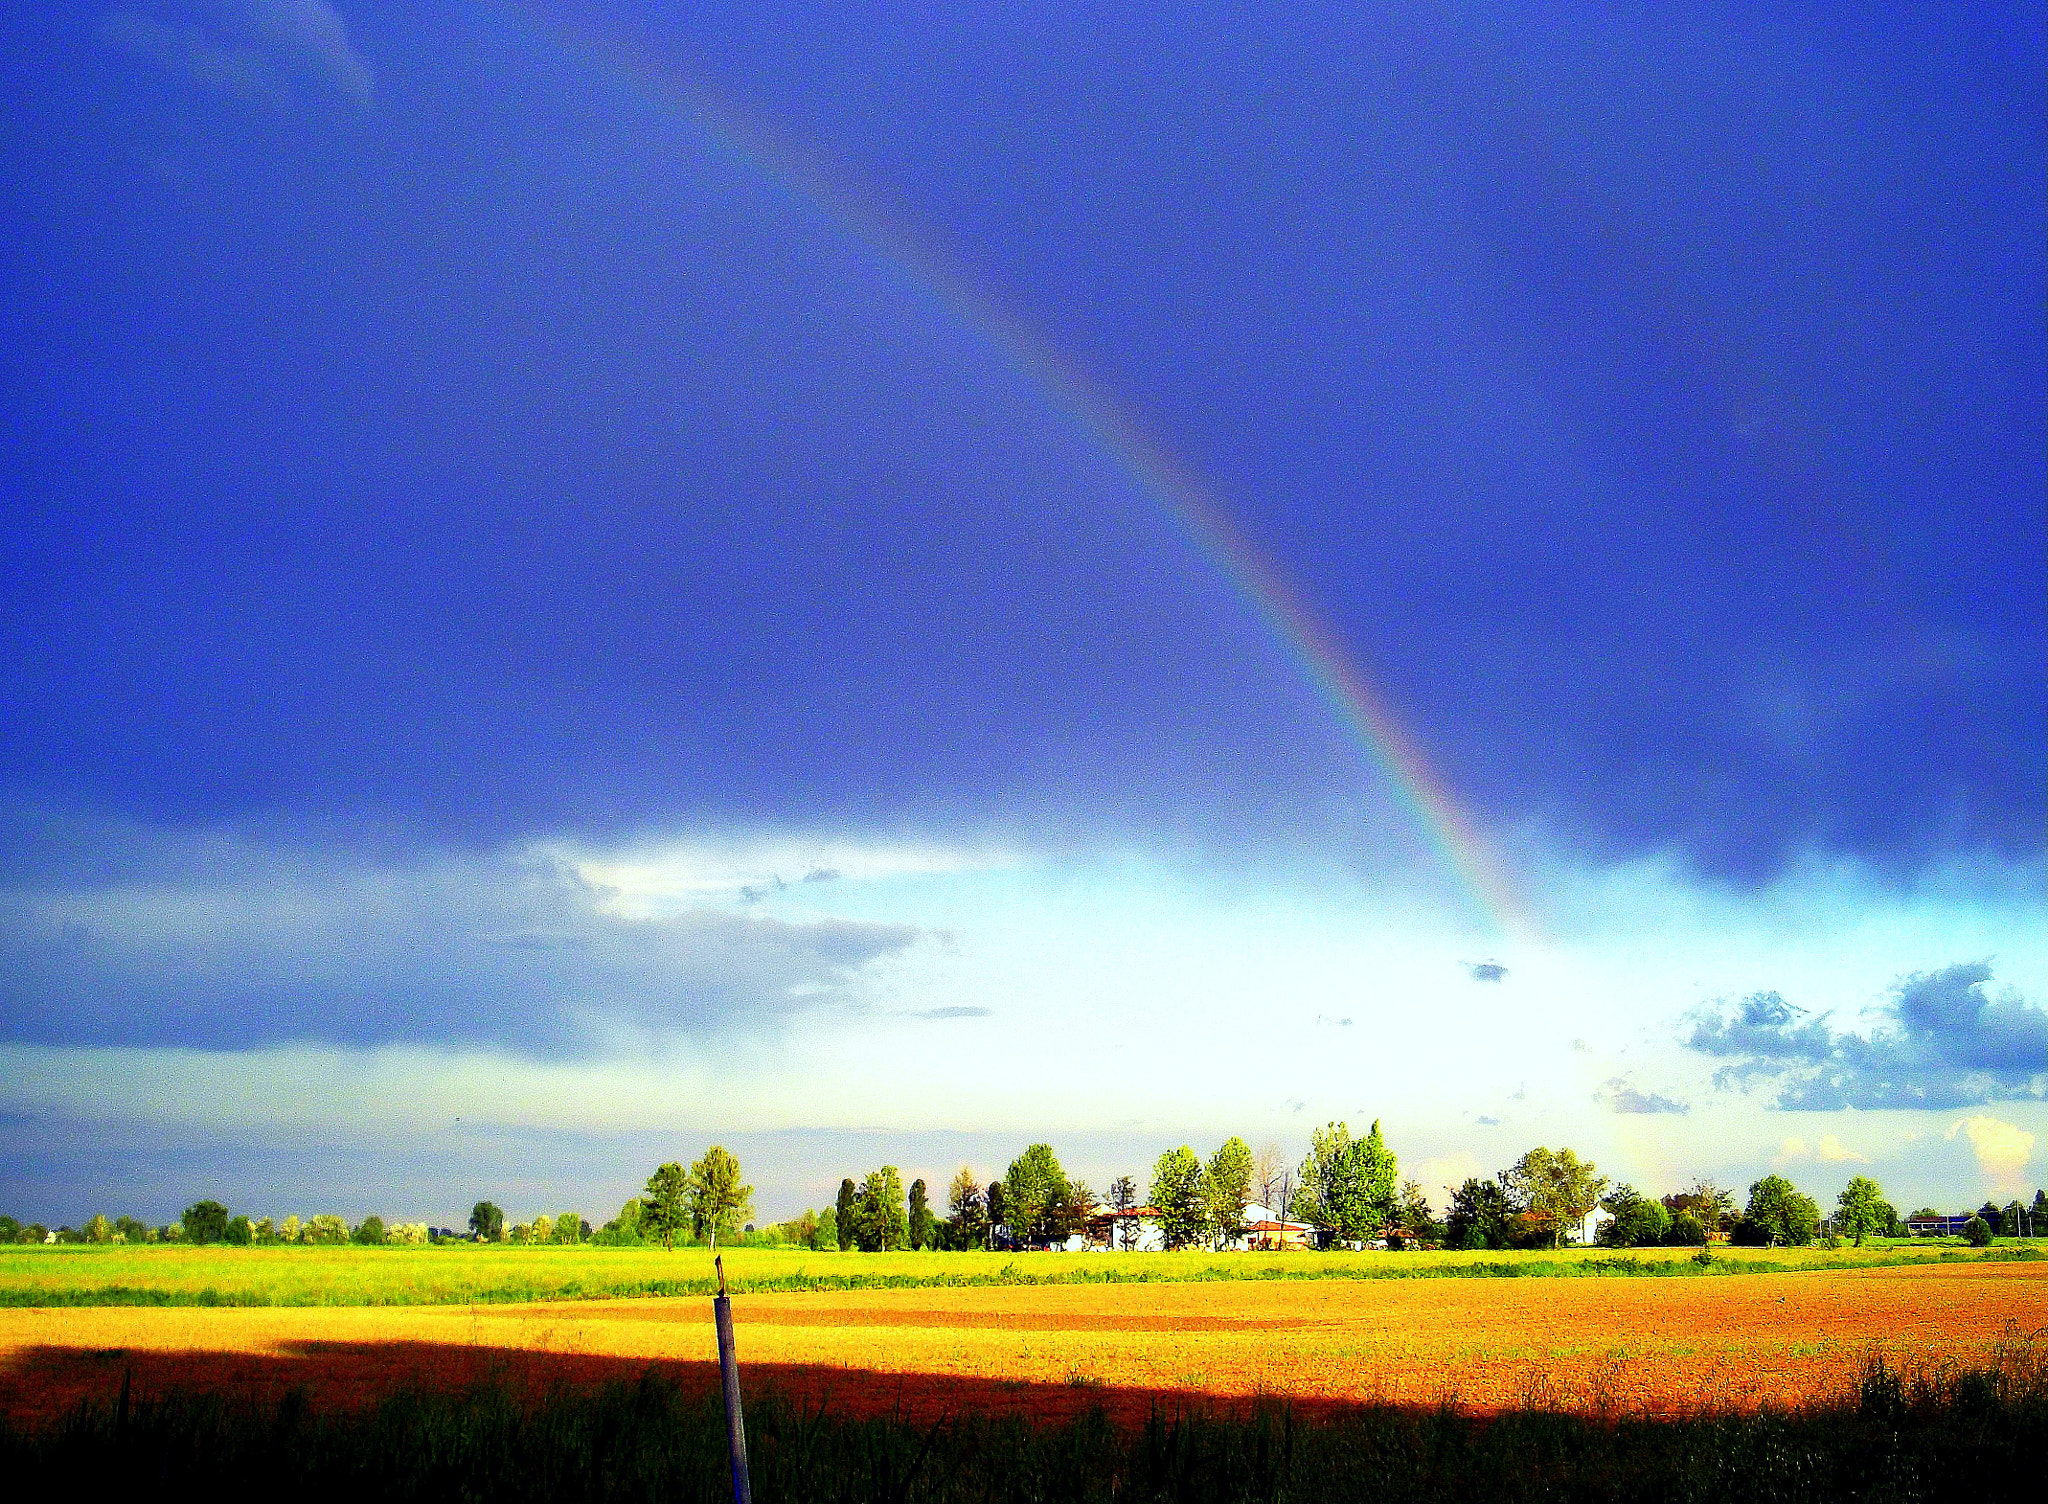 Fujifilm FinePix JX250 sample photo. Paesaggio di primavera dopo il temporale, con l'arcobaleno. photography